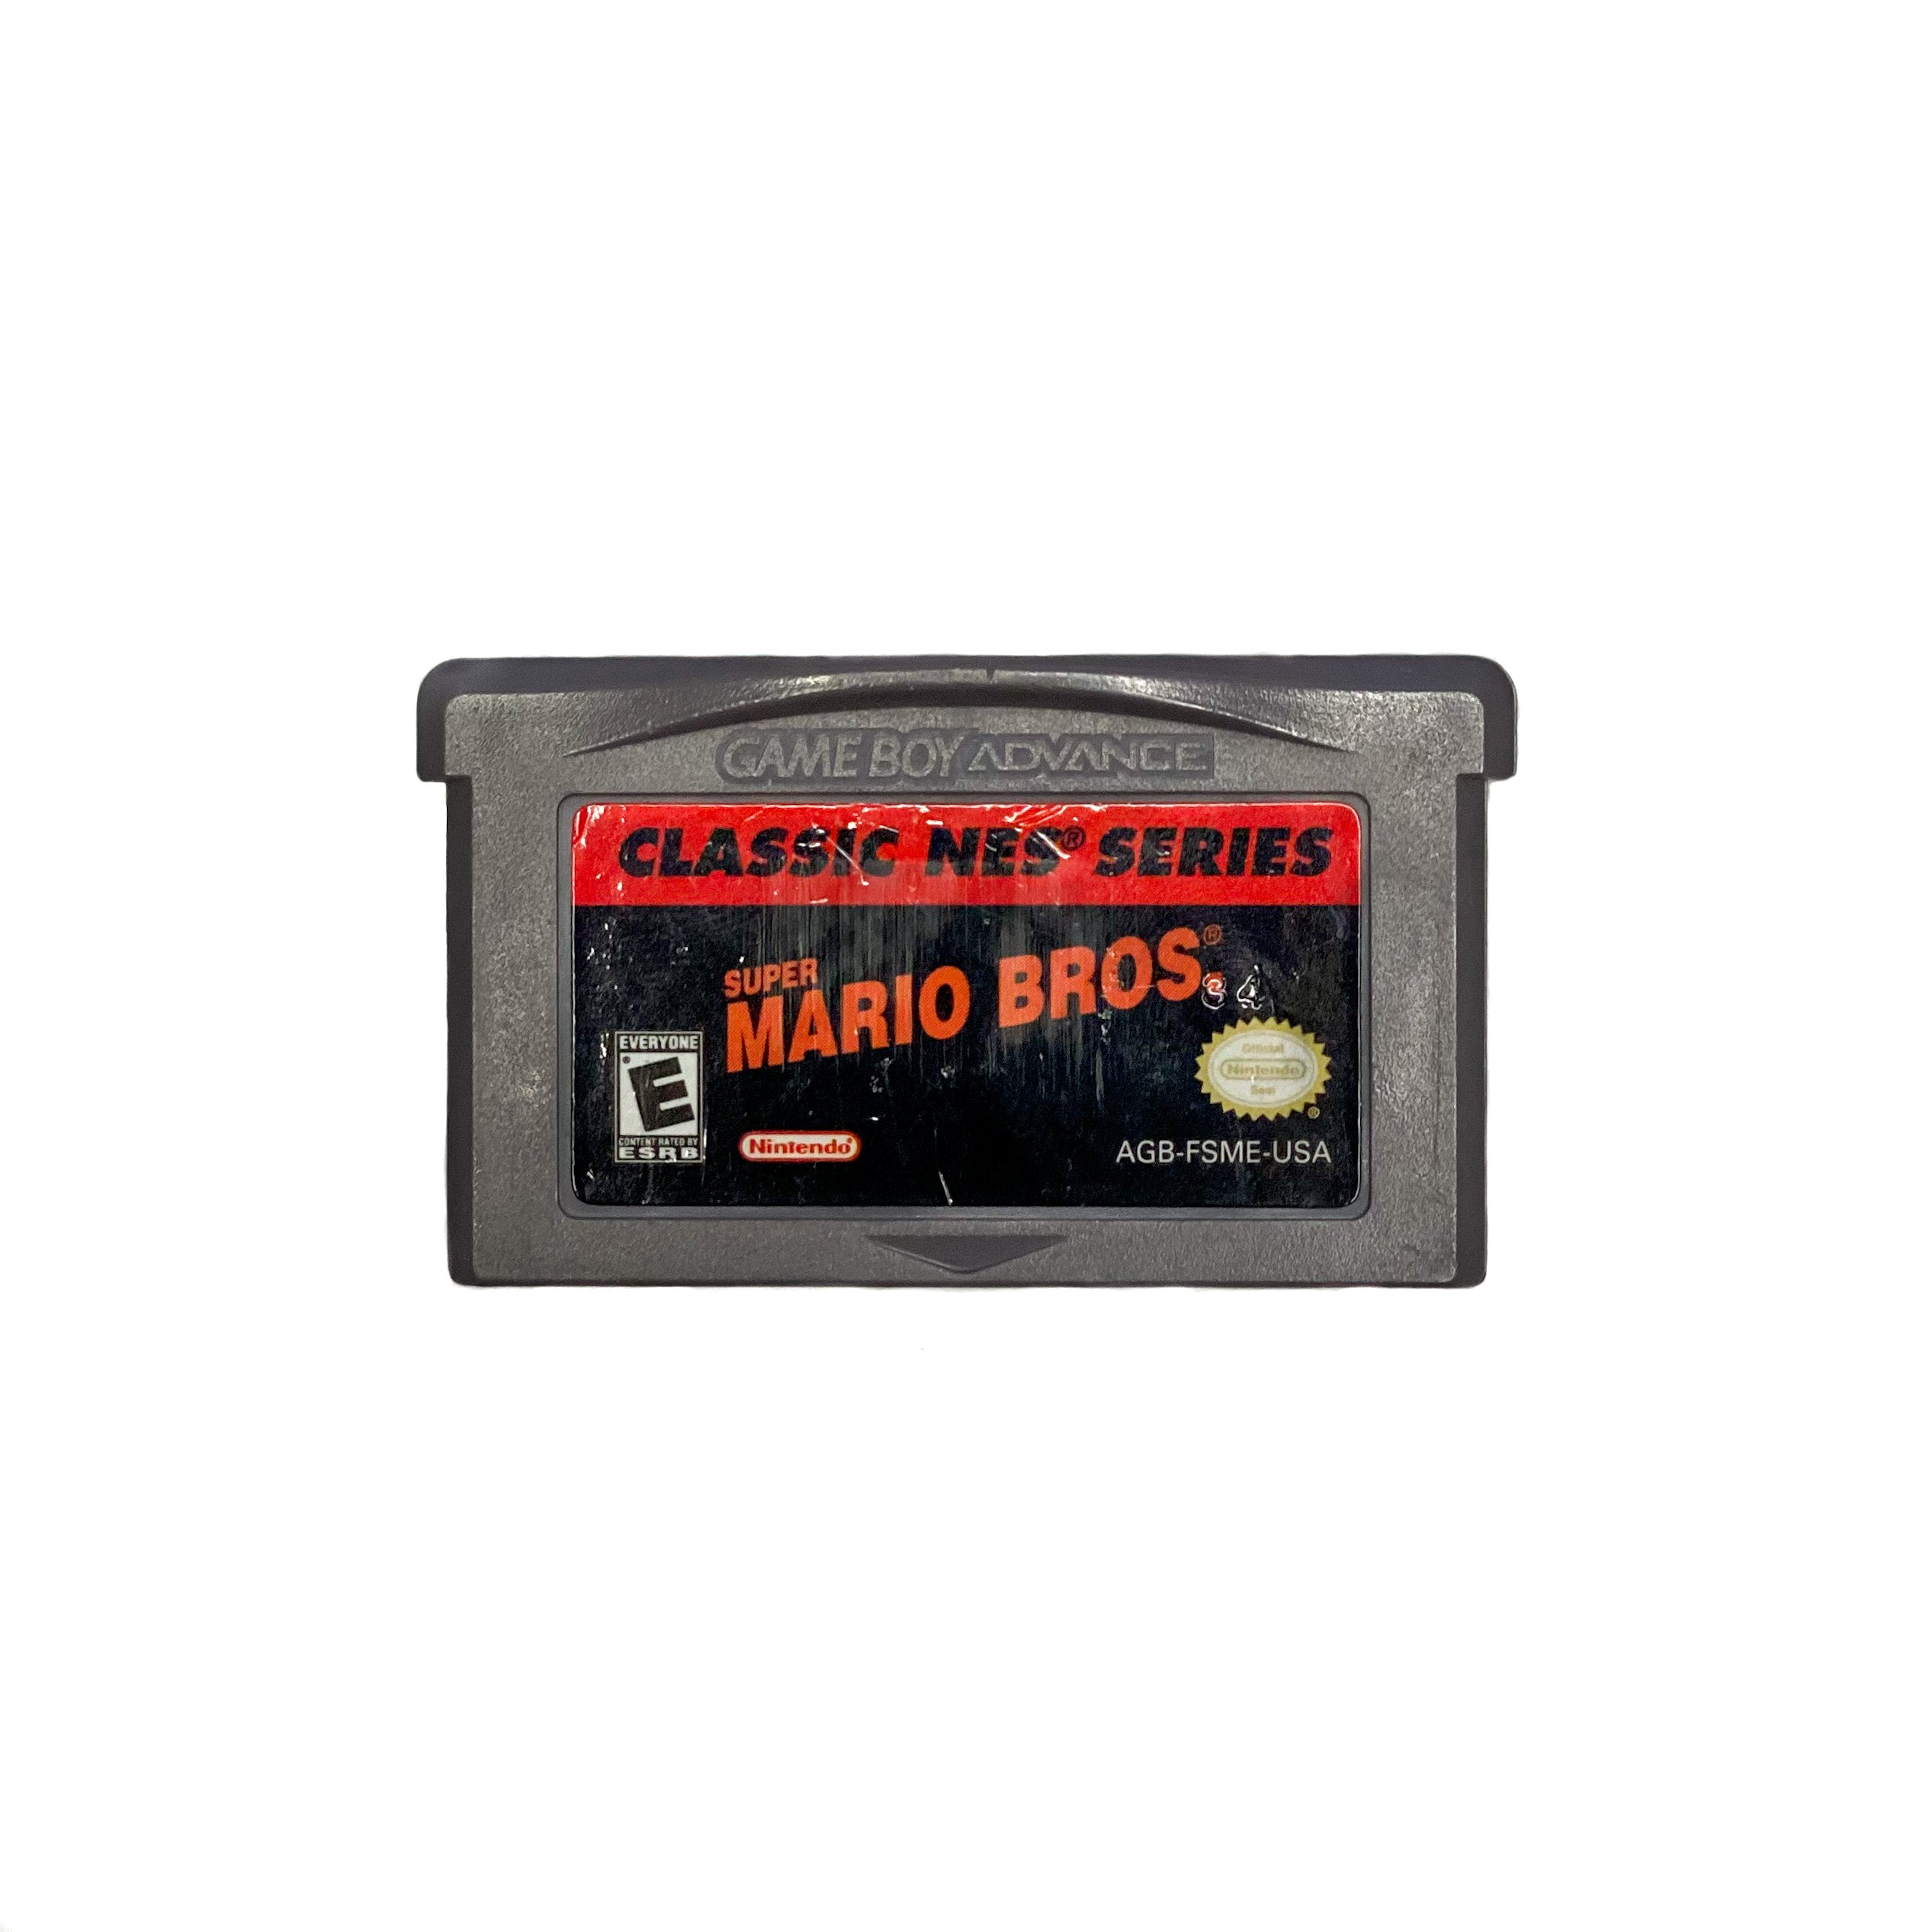 Classic NES Series: Mario Bros